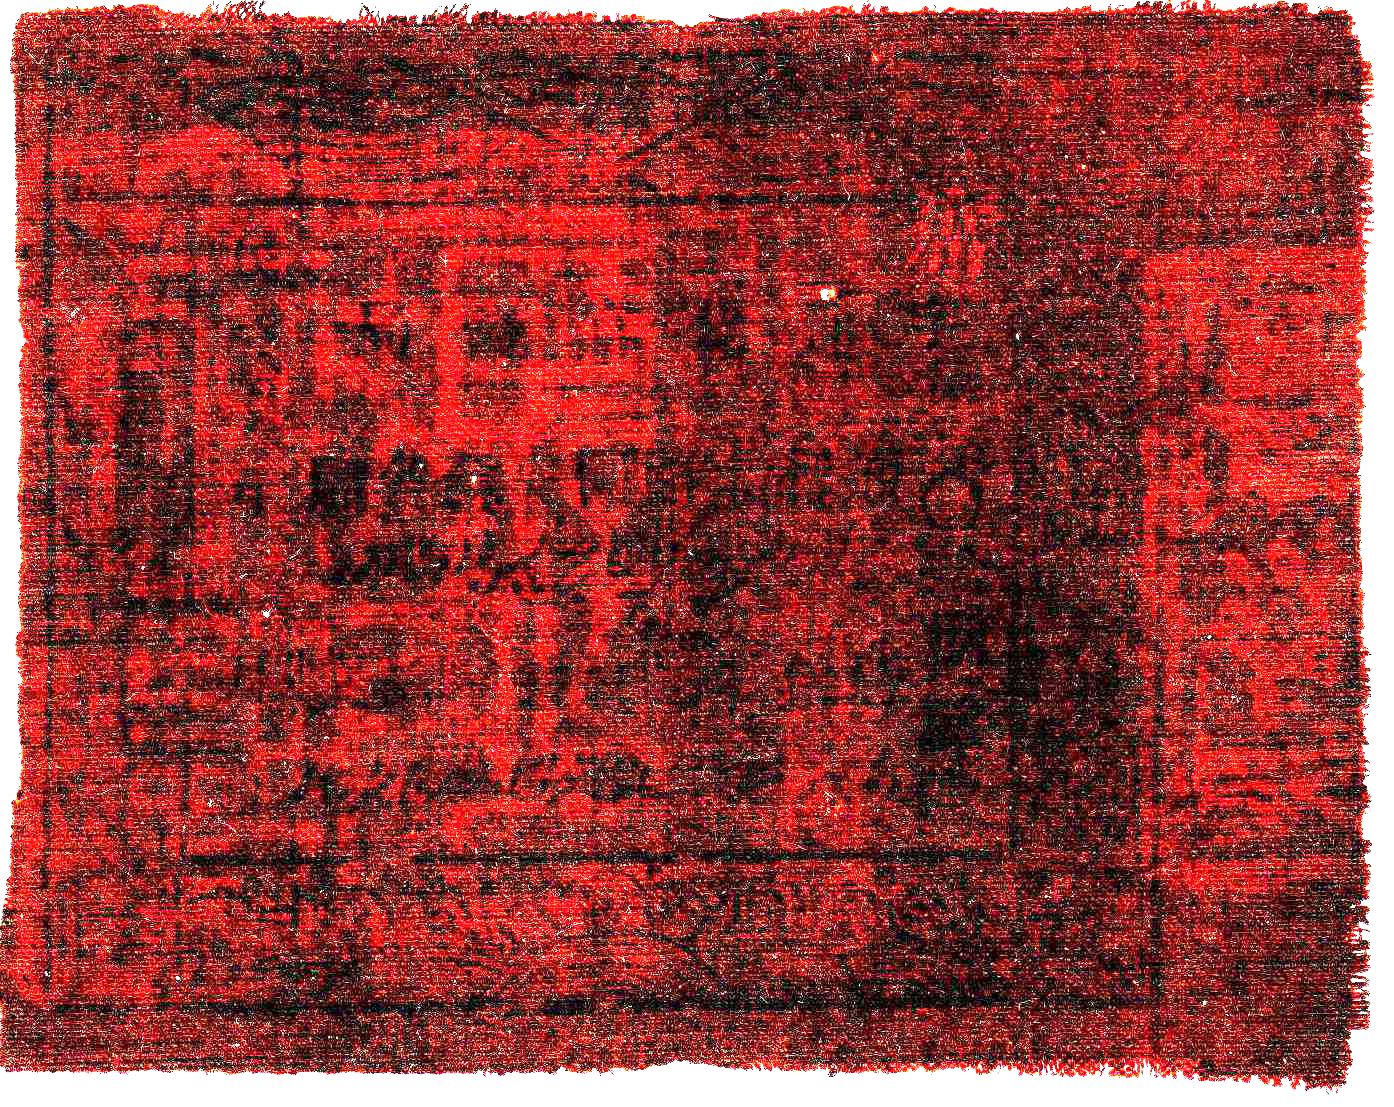 XJ0142, SinKiang Cloth Fabric Banknote, 1 Tael, (Tihua) 1923 Rare